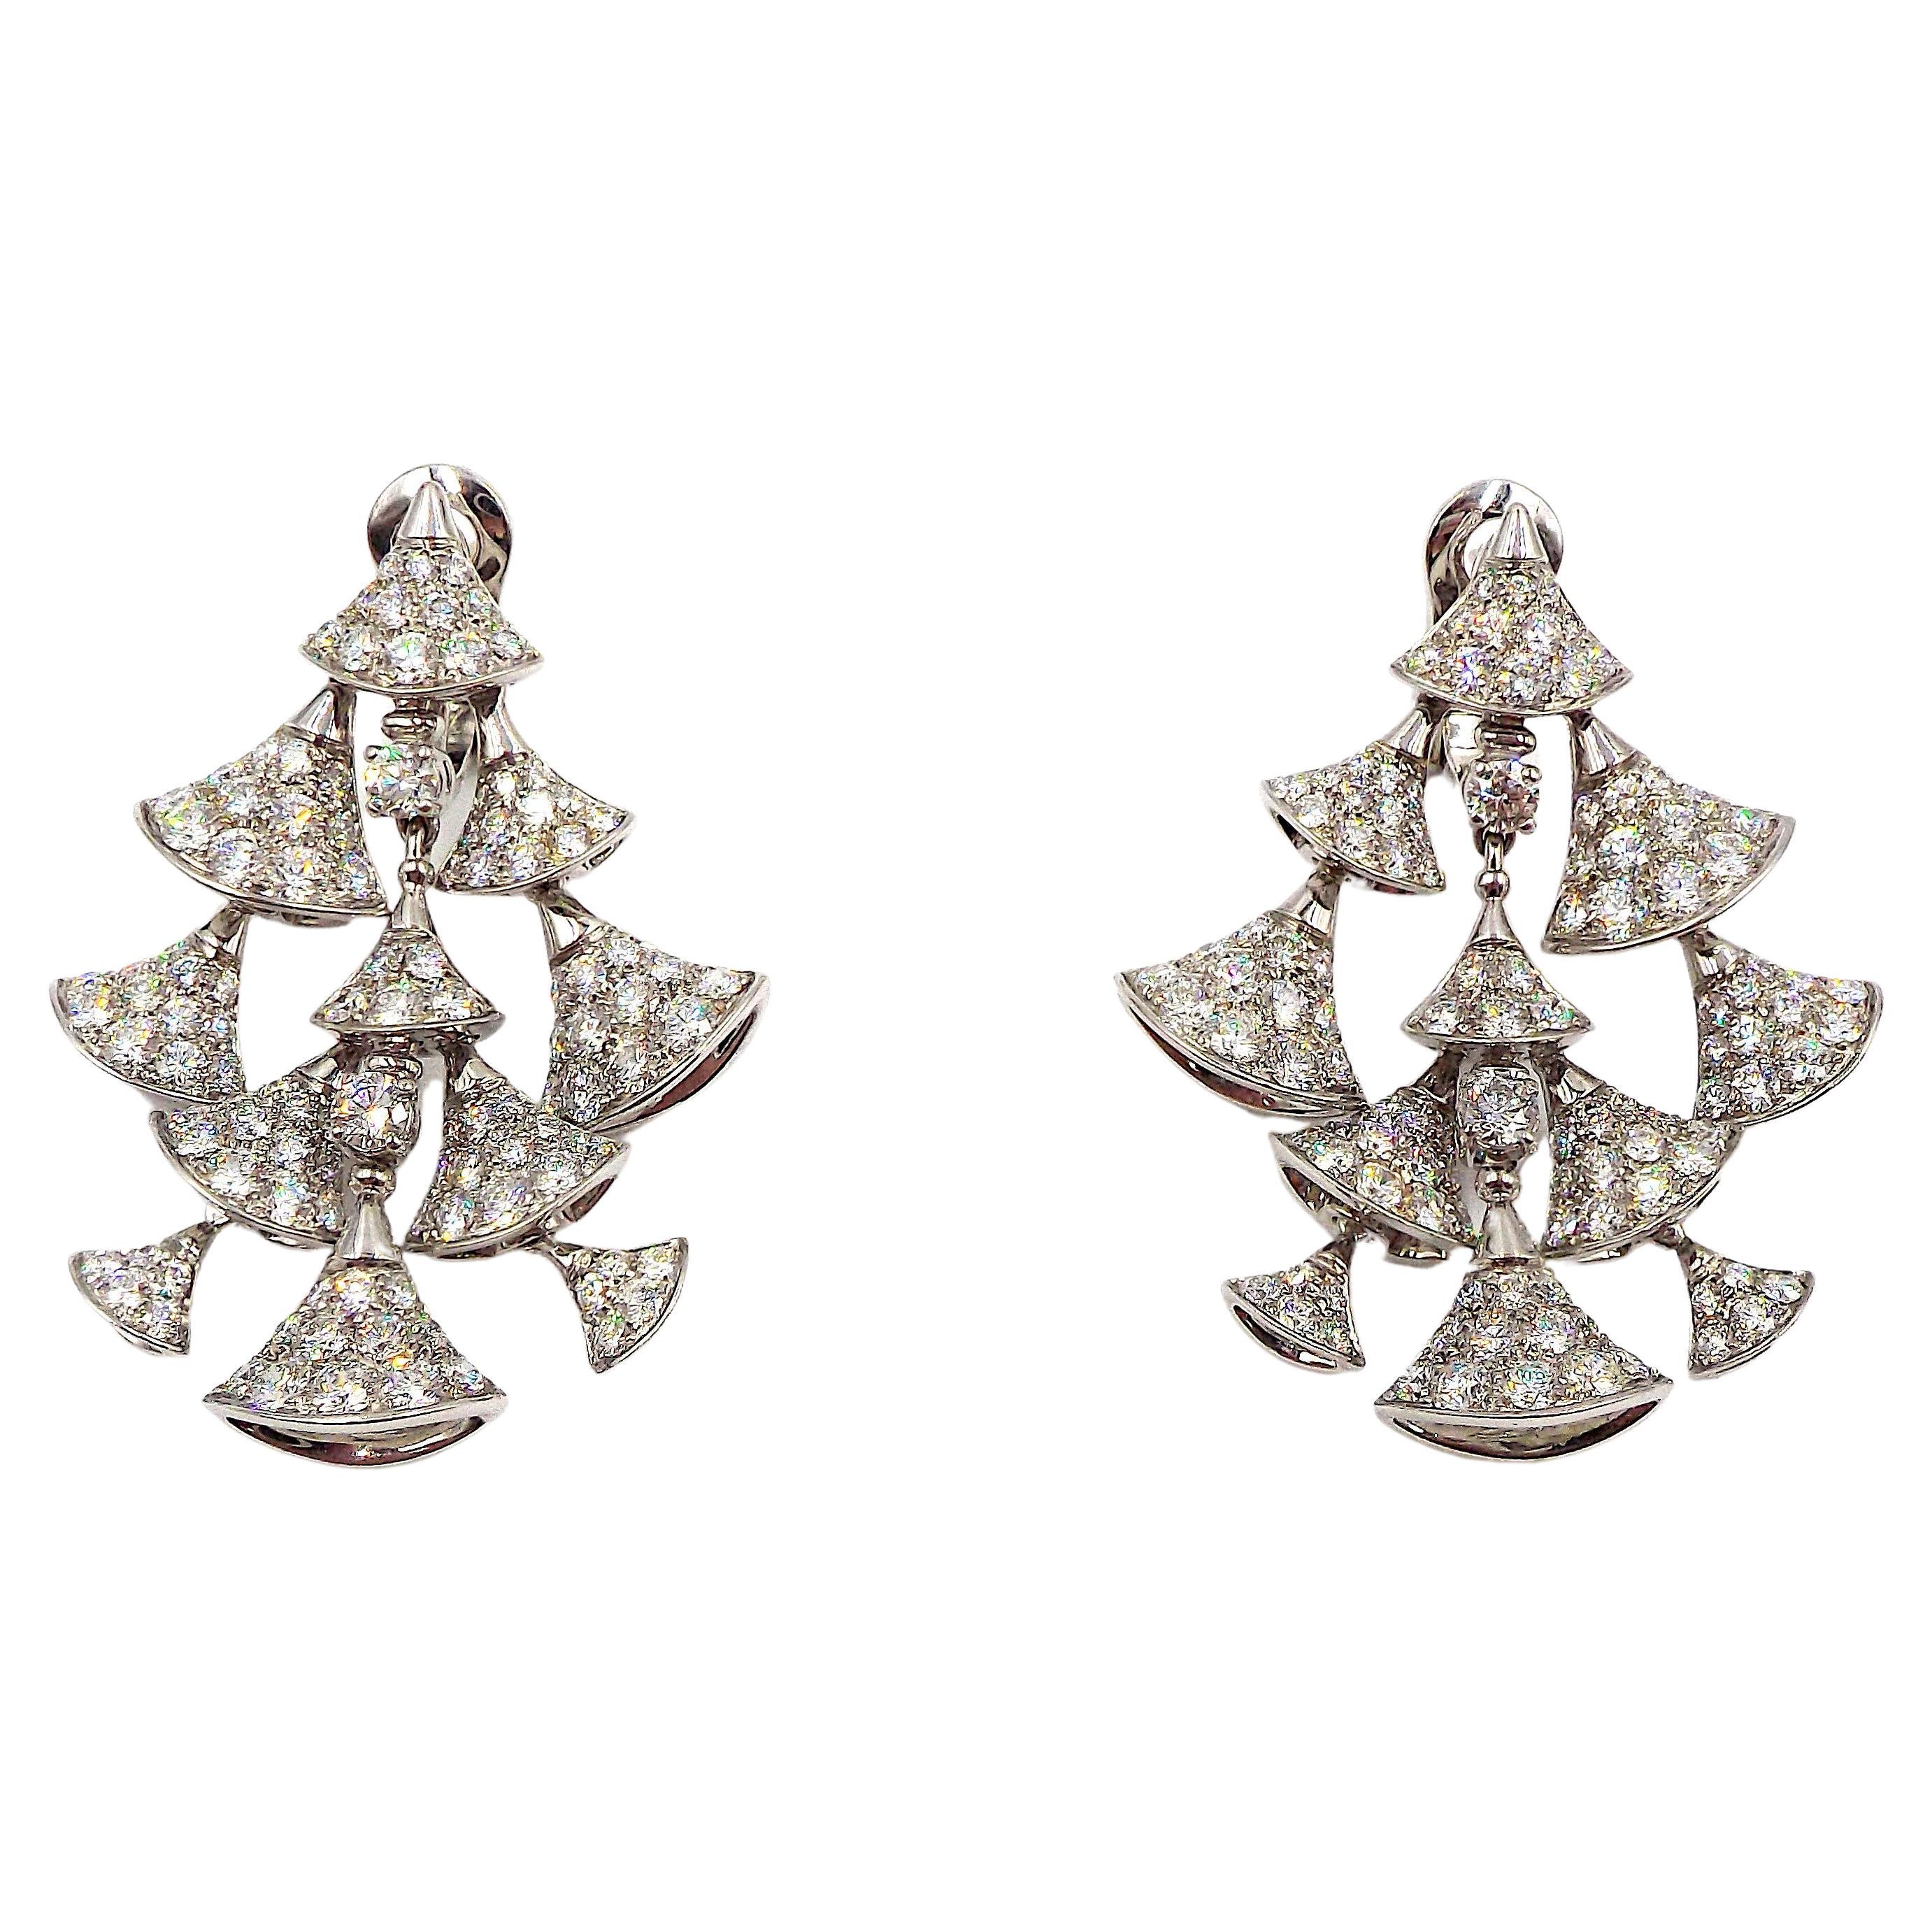 Bulgari Diva's Dream 18K White Gold Diamond Chandelier Pendant Earrings